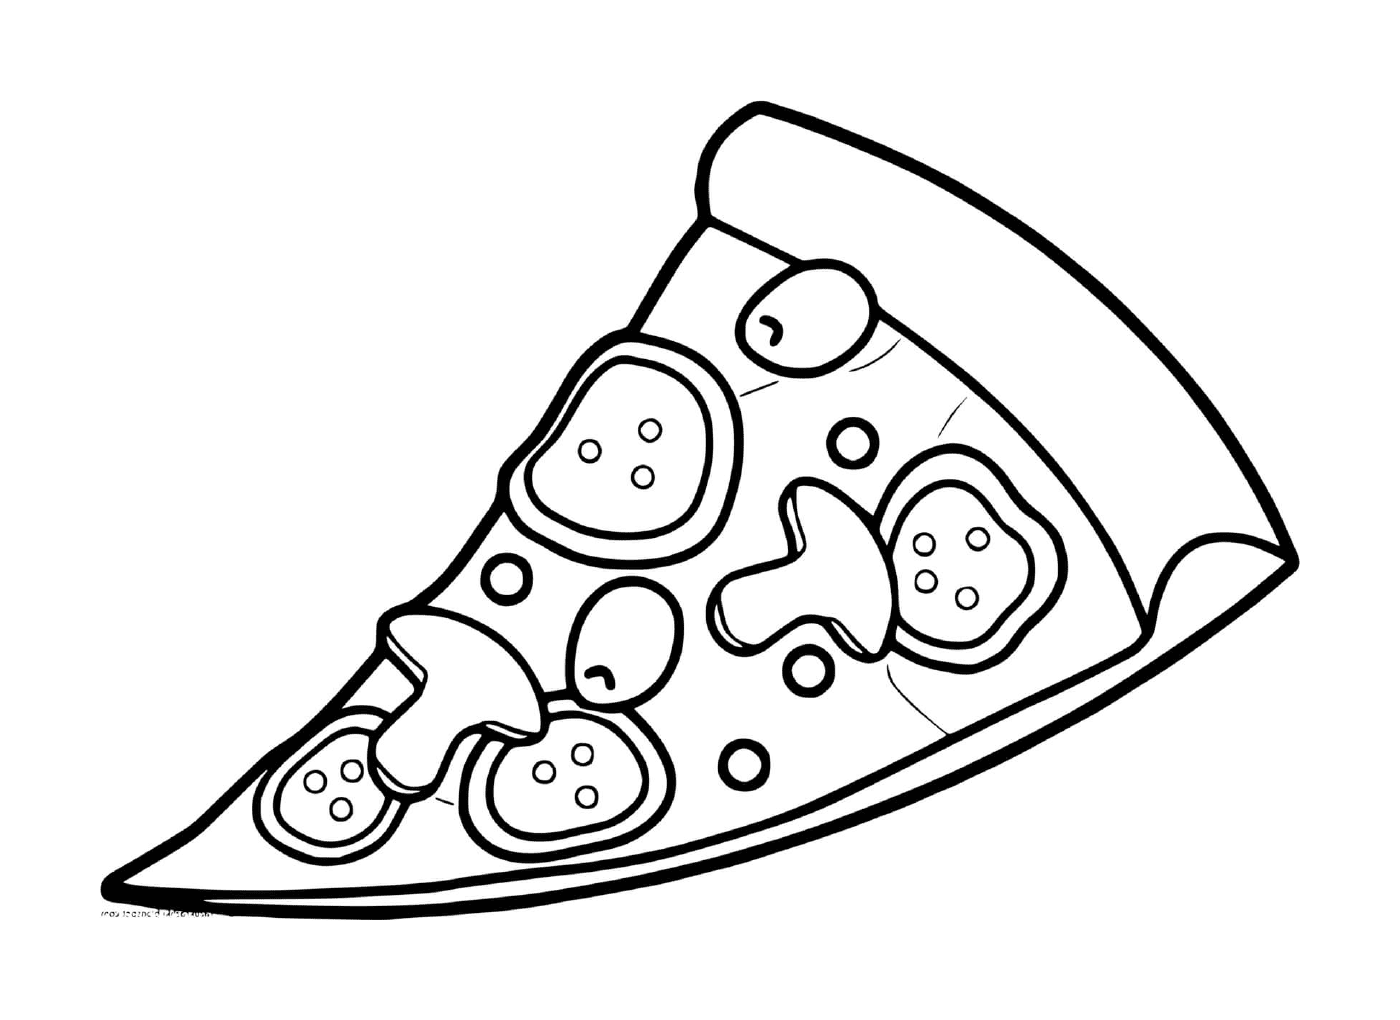   Une pizza aux tomates et champignons 